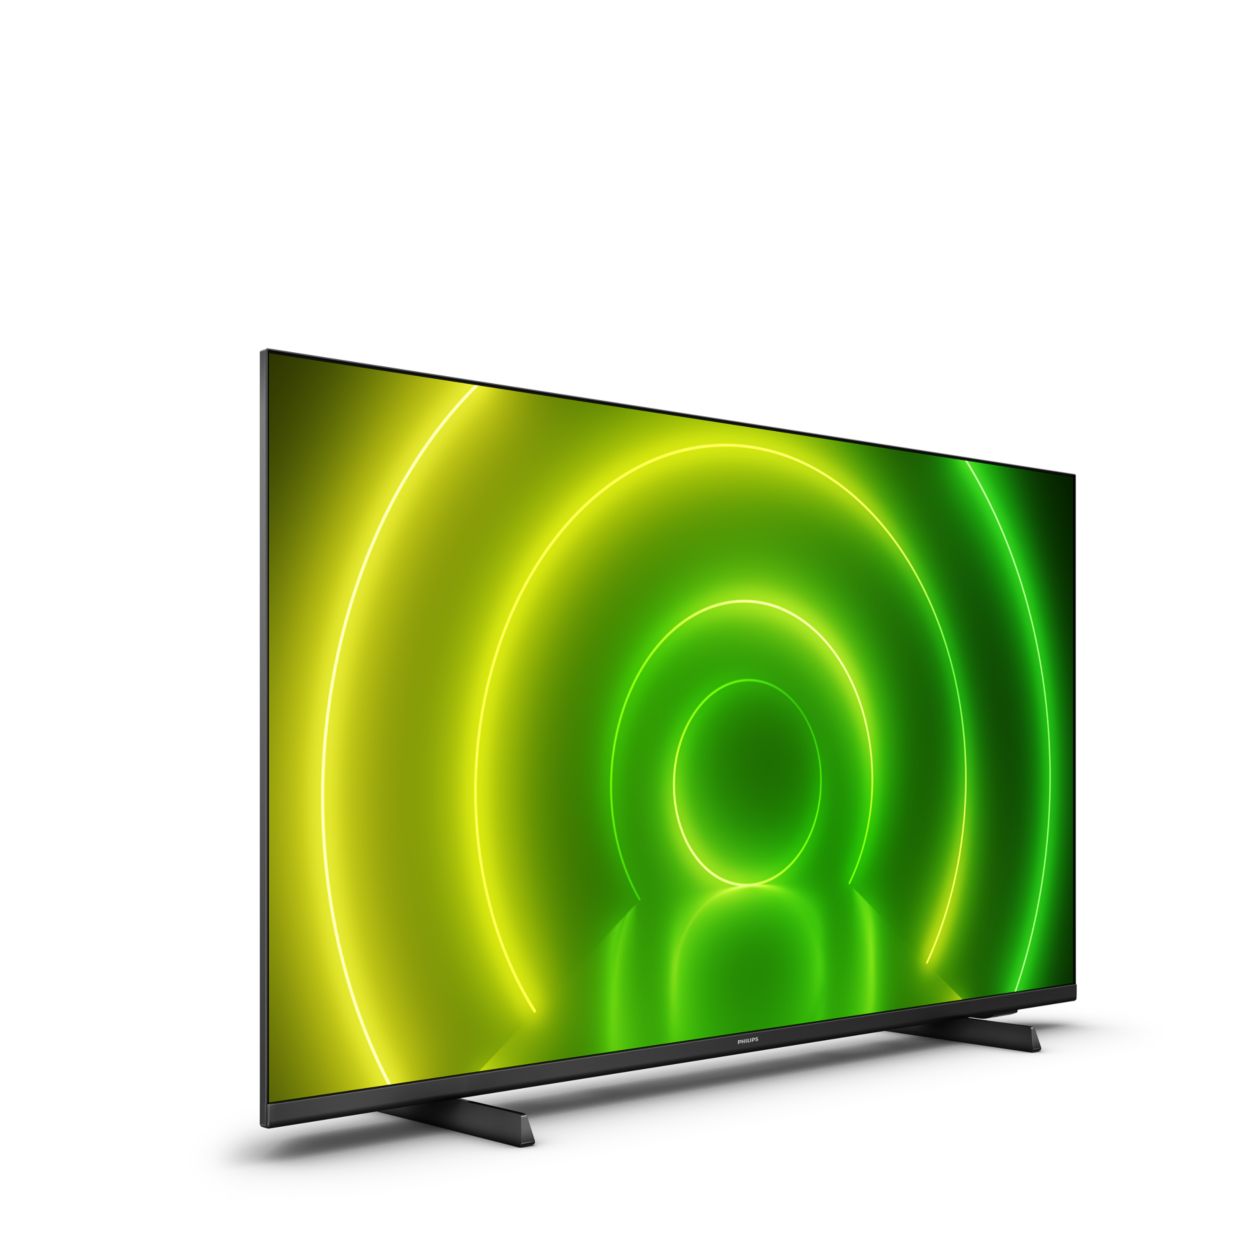 Smart TV 50 pulgadas al mejor Precio